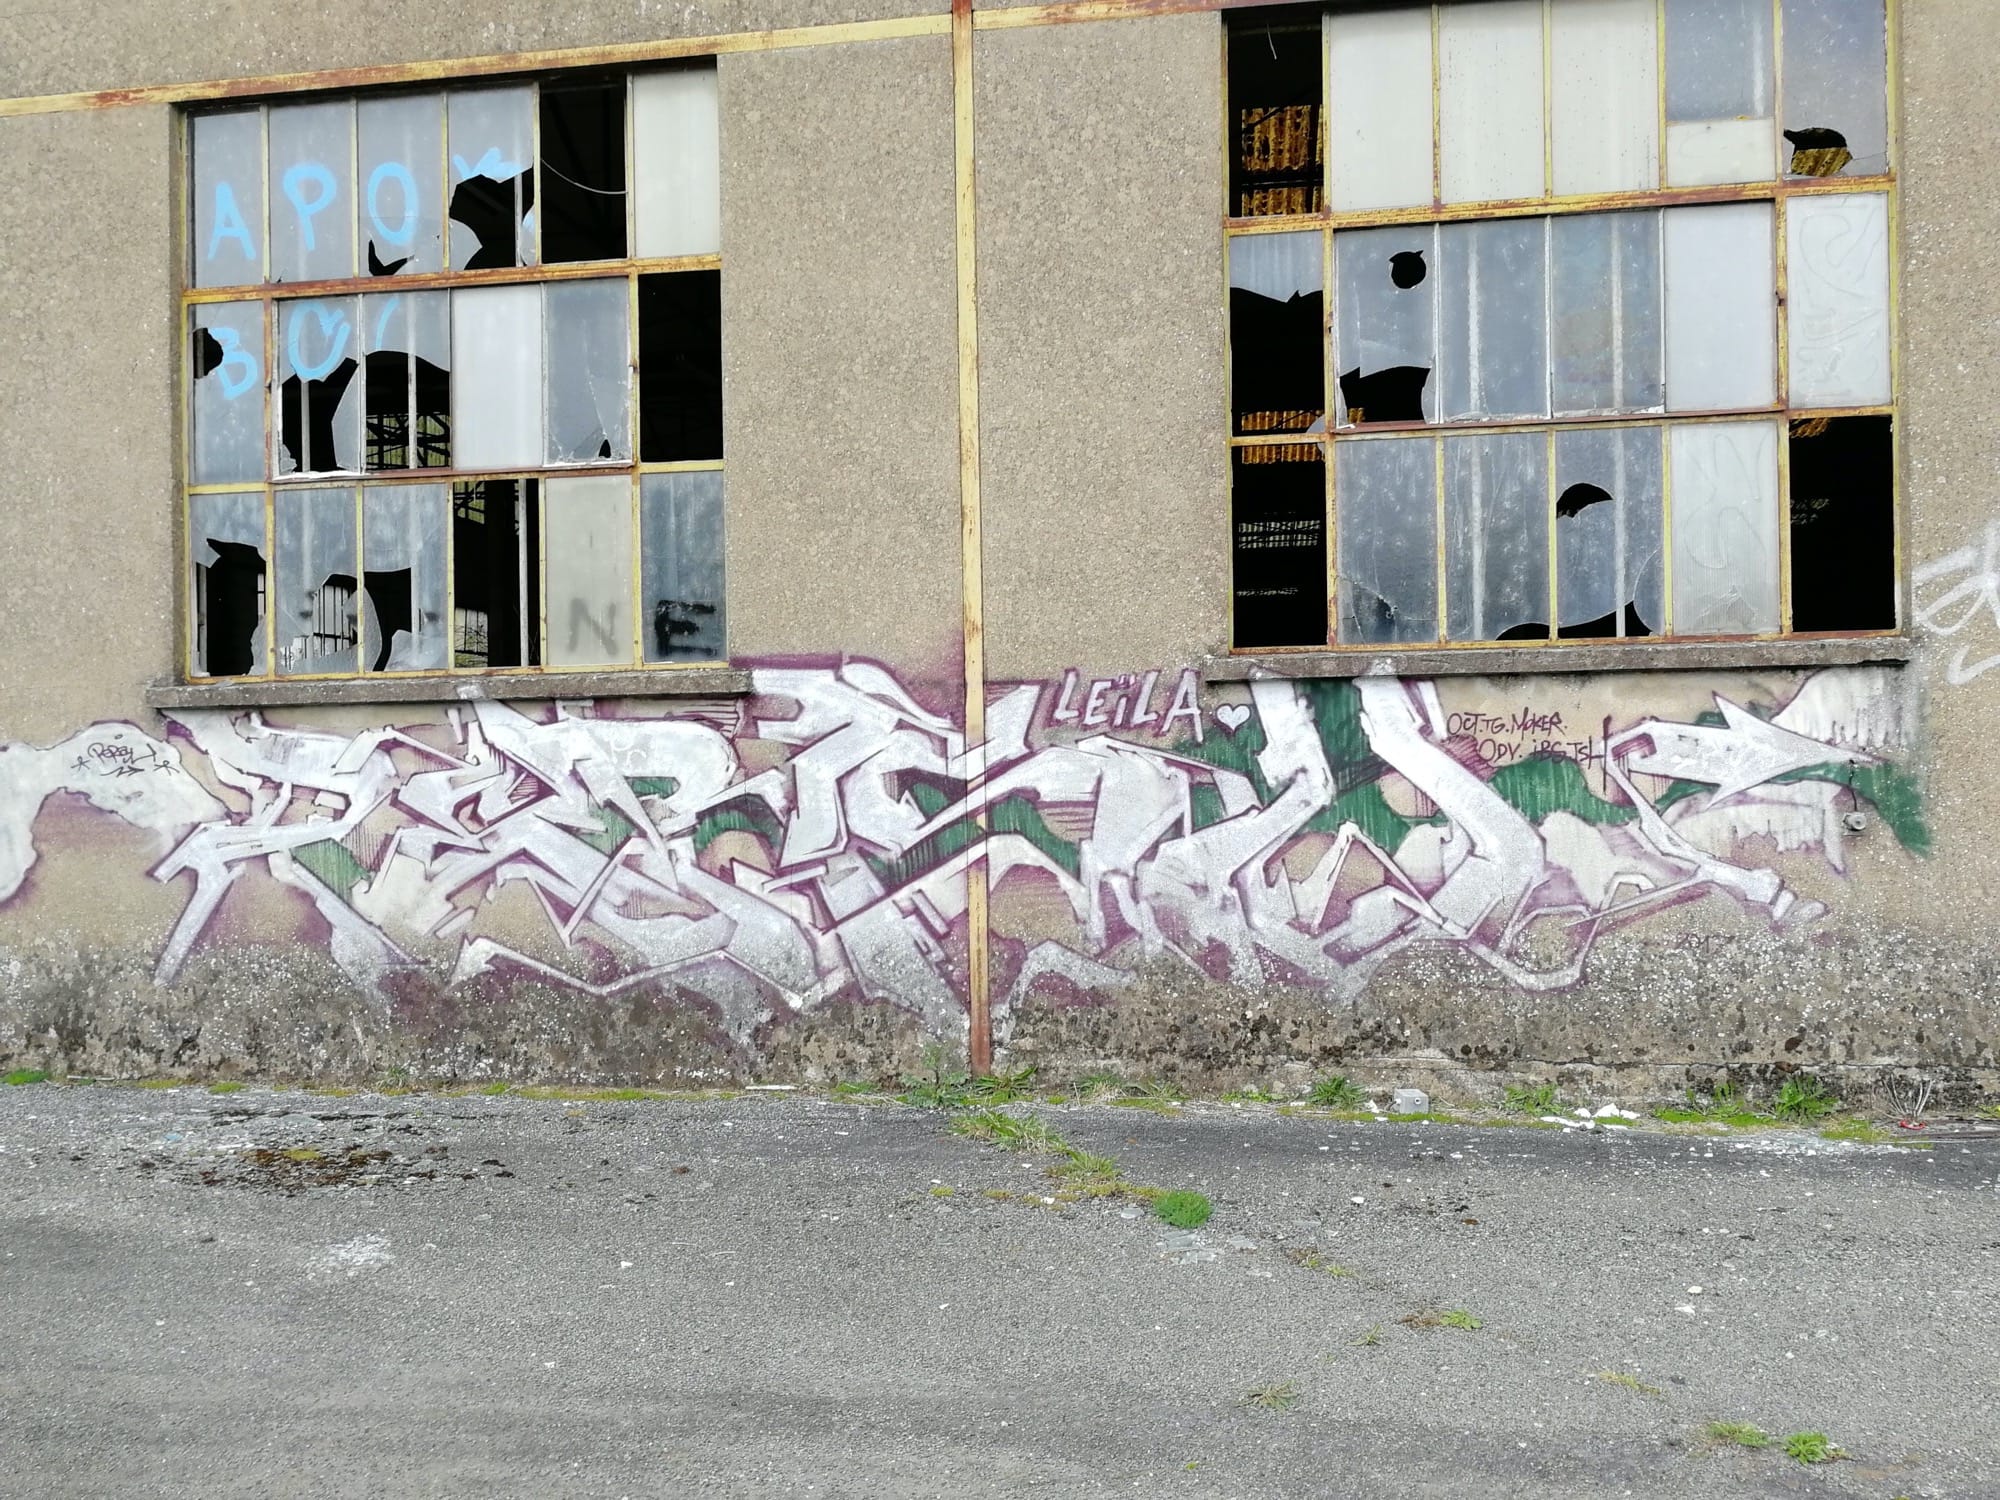 Graffiti 1374 Leila de Persu capturé par Rabot à Issé France